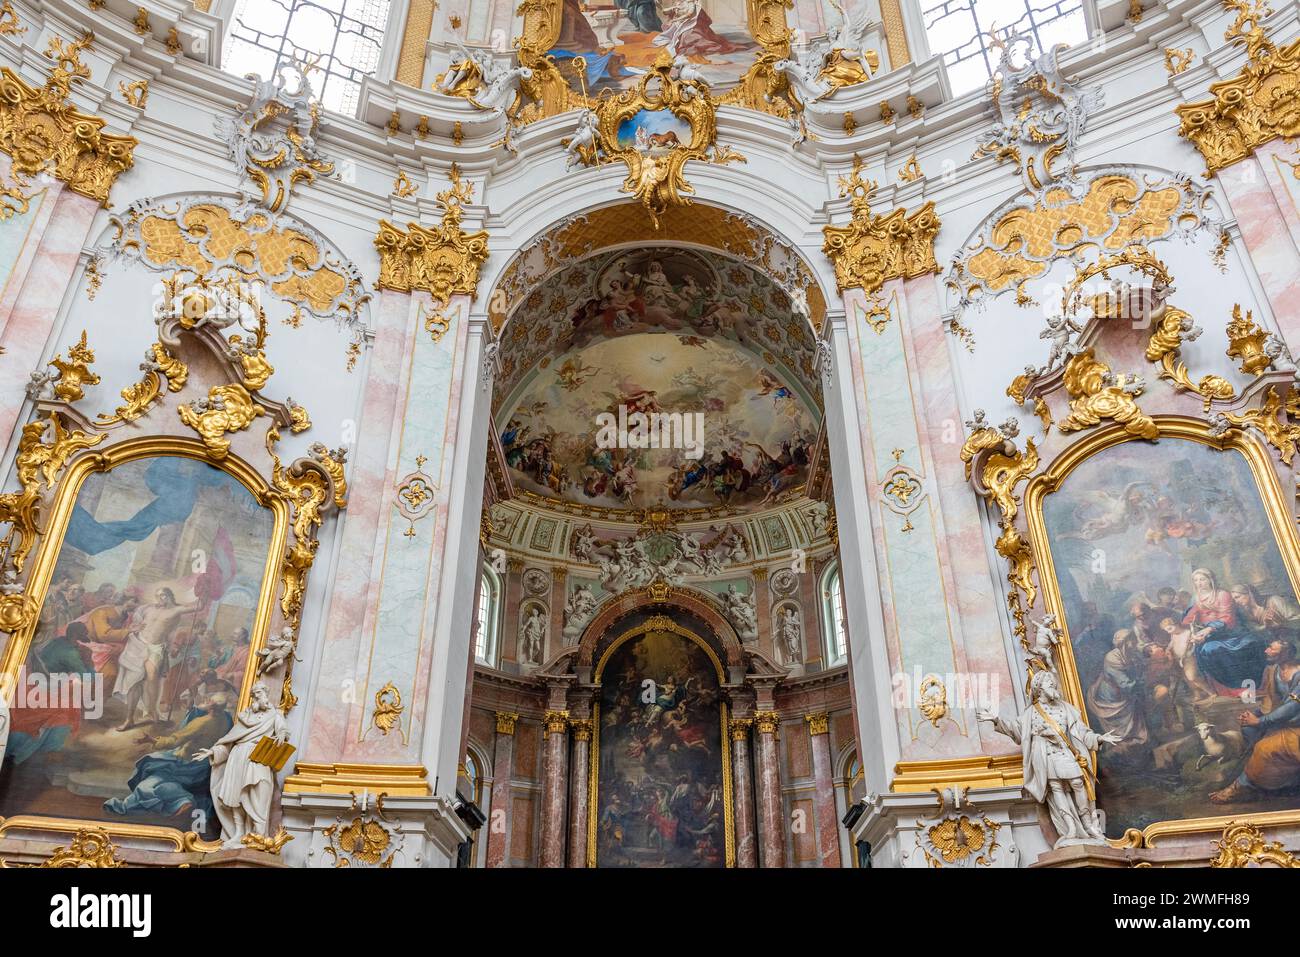 Innenansicht einer barocken Kirche mit reich verzierten goldenen Ornamenten und Deckenfresken, Benediktinerabtei von Ettal, Bayern Stockfoto